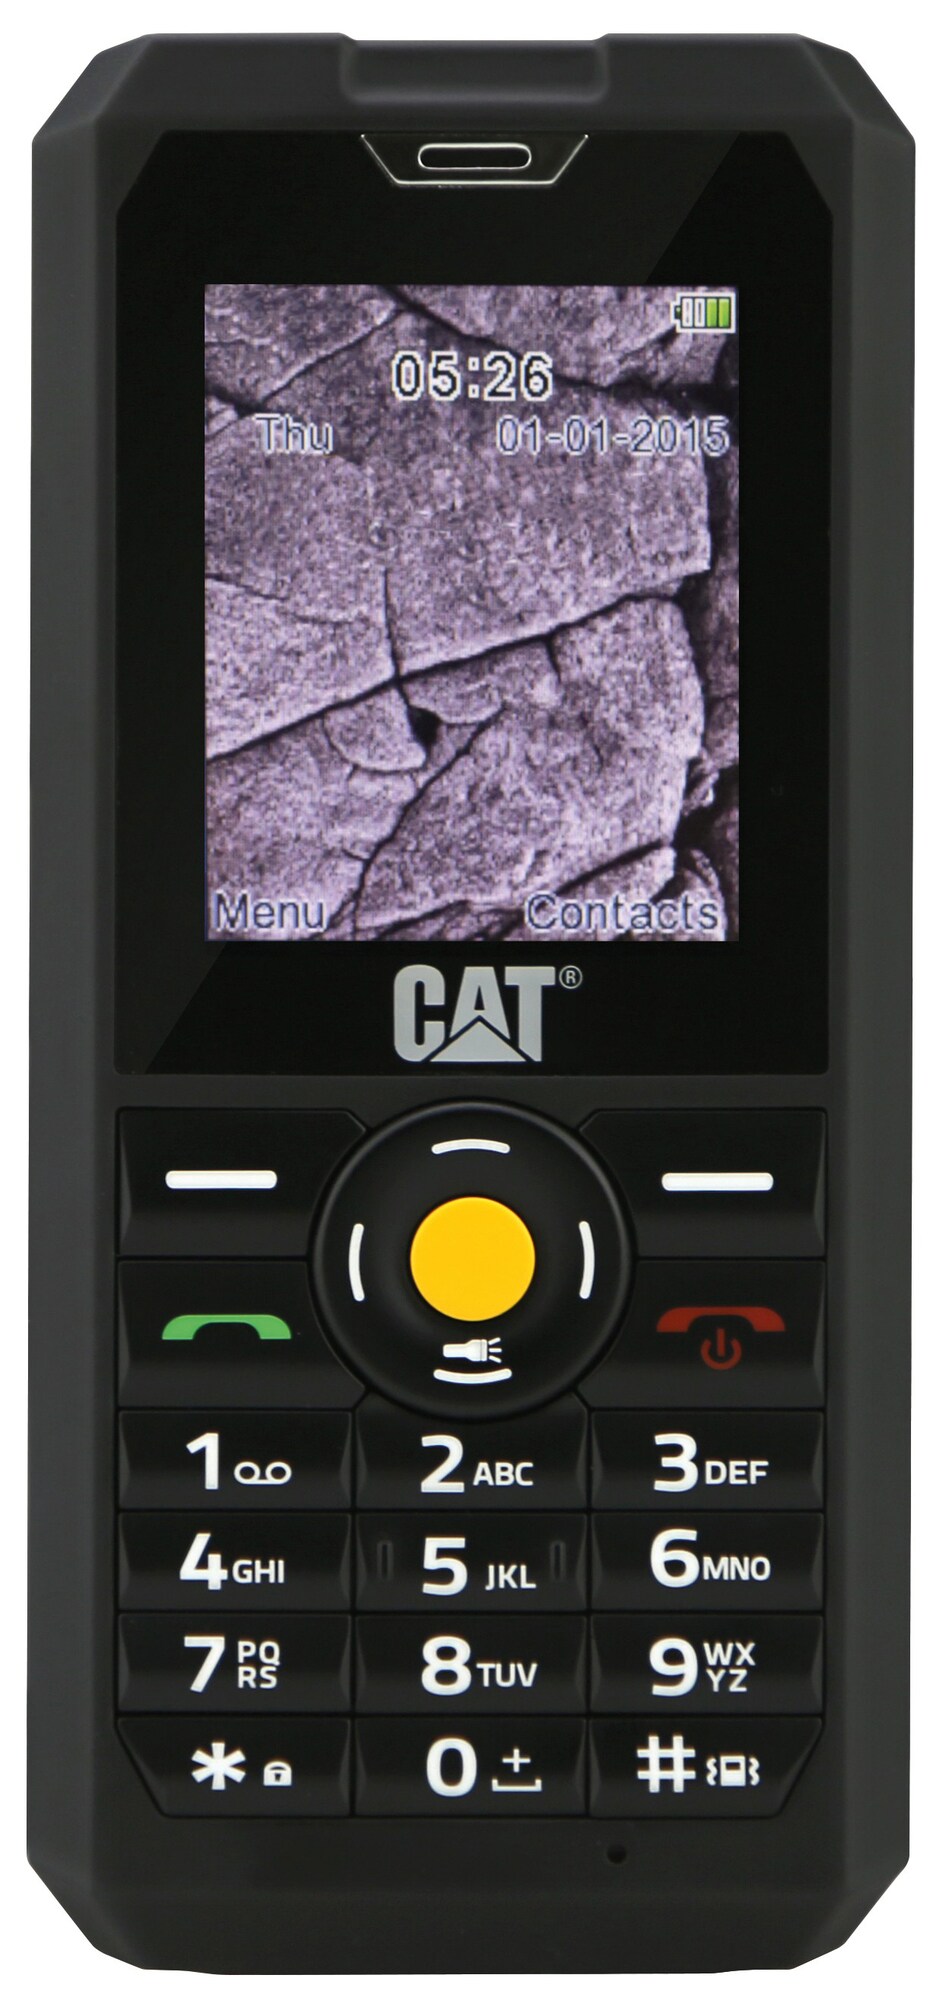 Caterpillar B30 matkapuhelin - Gigantti verkkokauppa